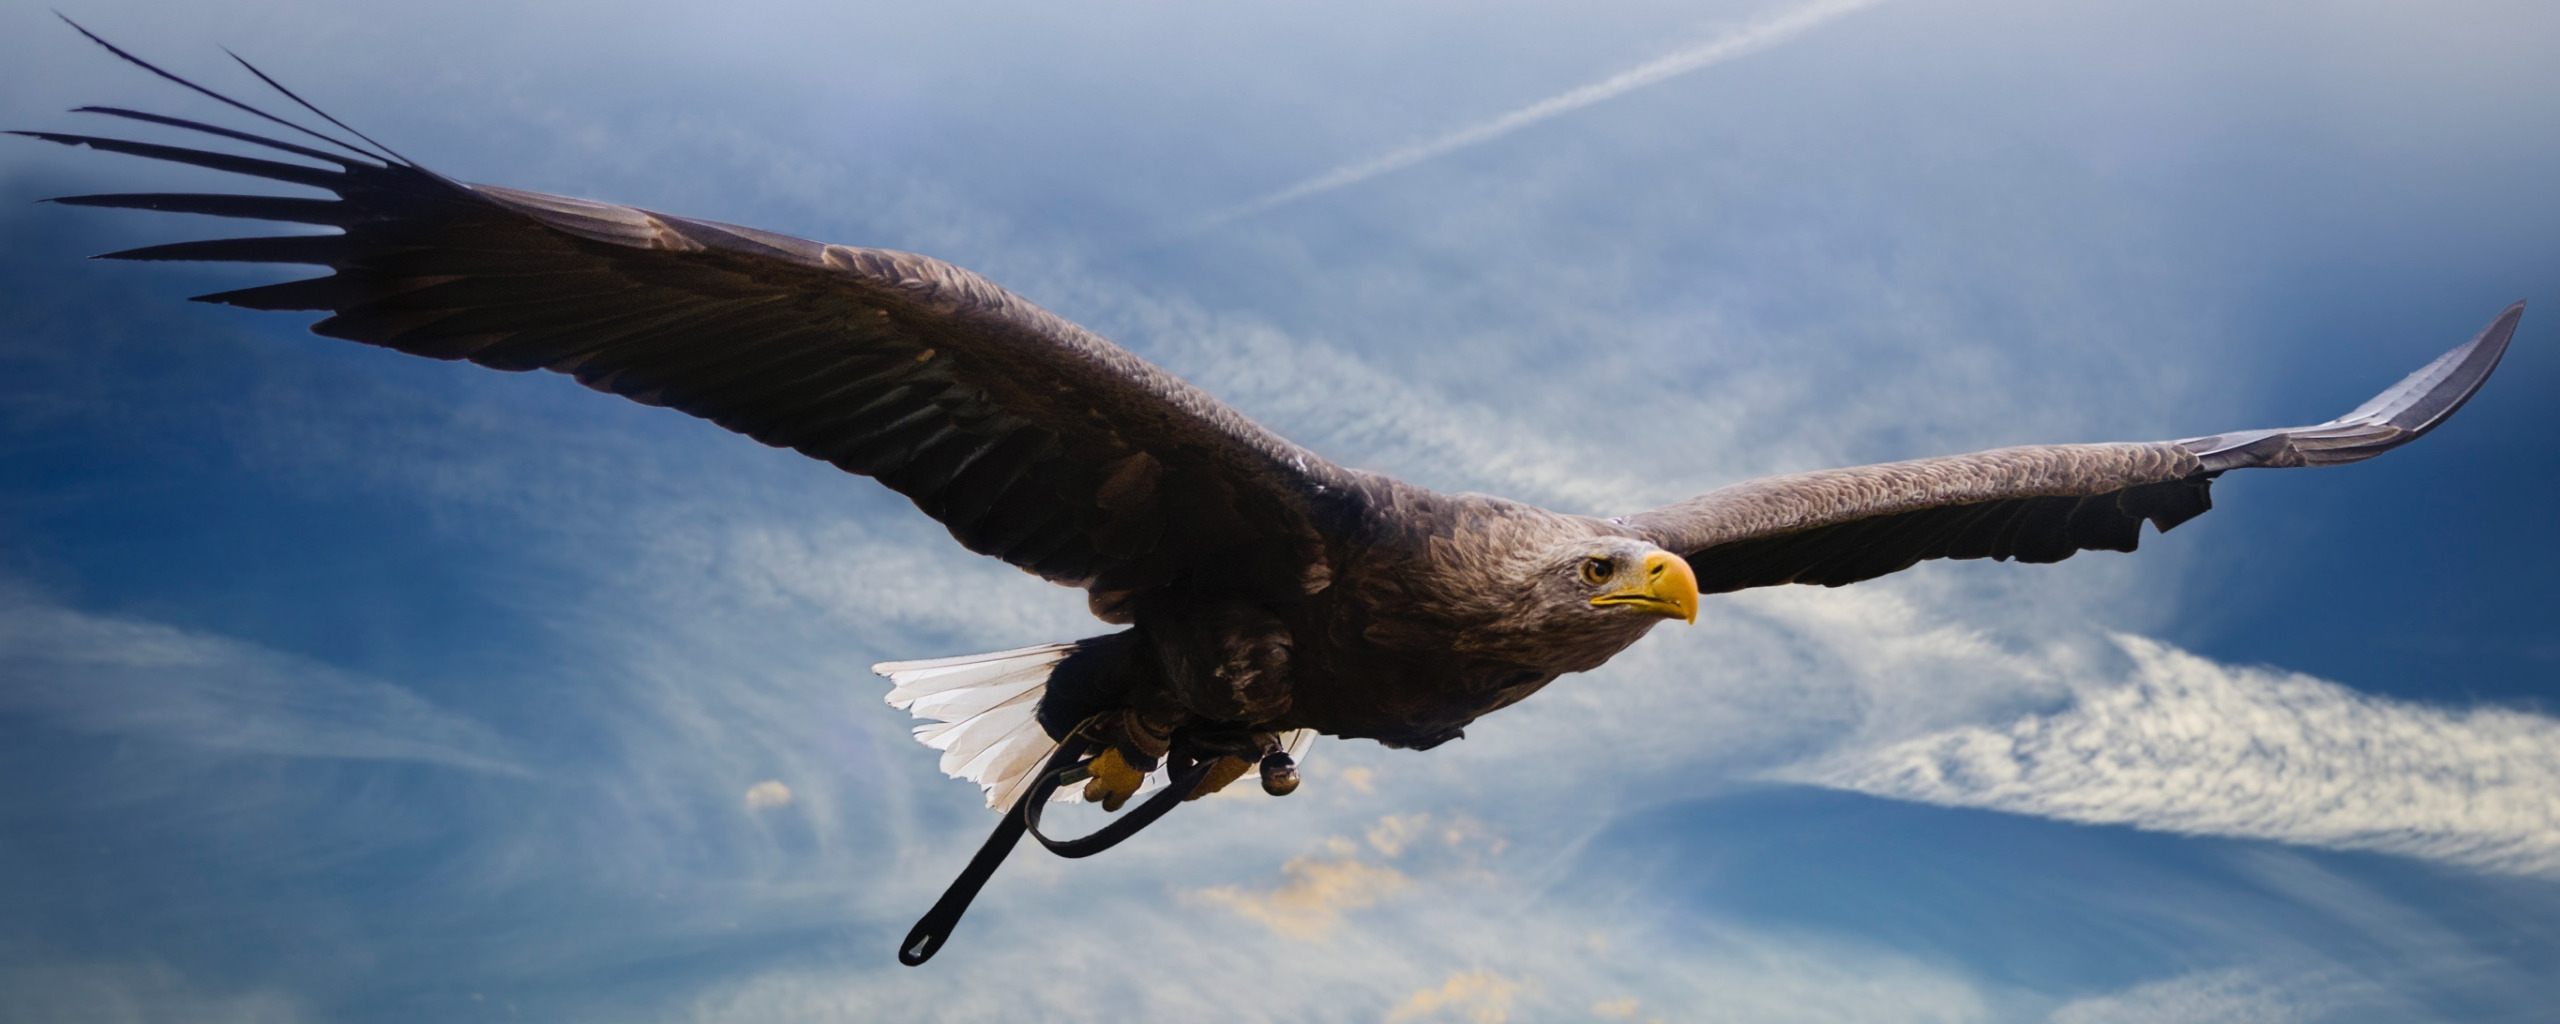 Хищные птицы Ставропольского края. Орел взлетает. Фото орла в полете. Орел в полете над горами. Читать путь орла